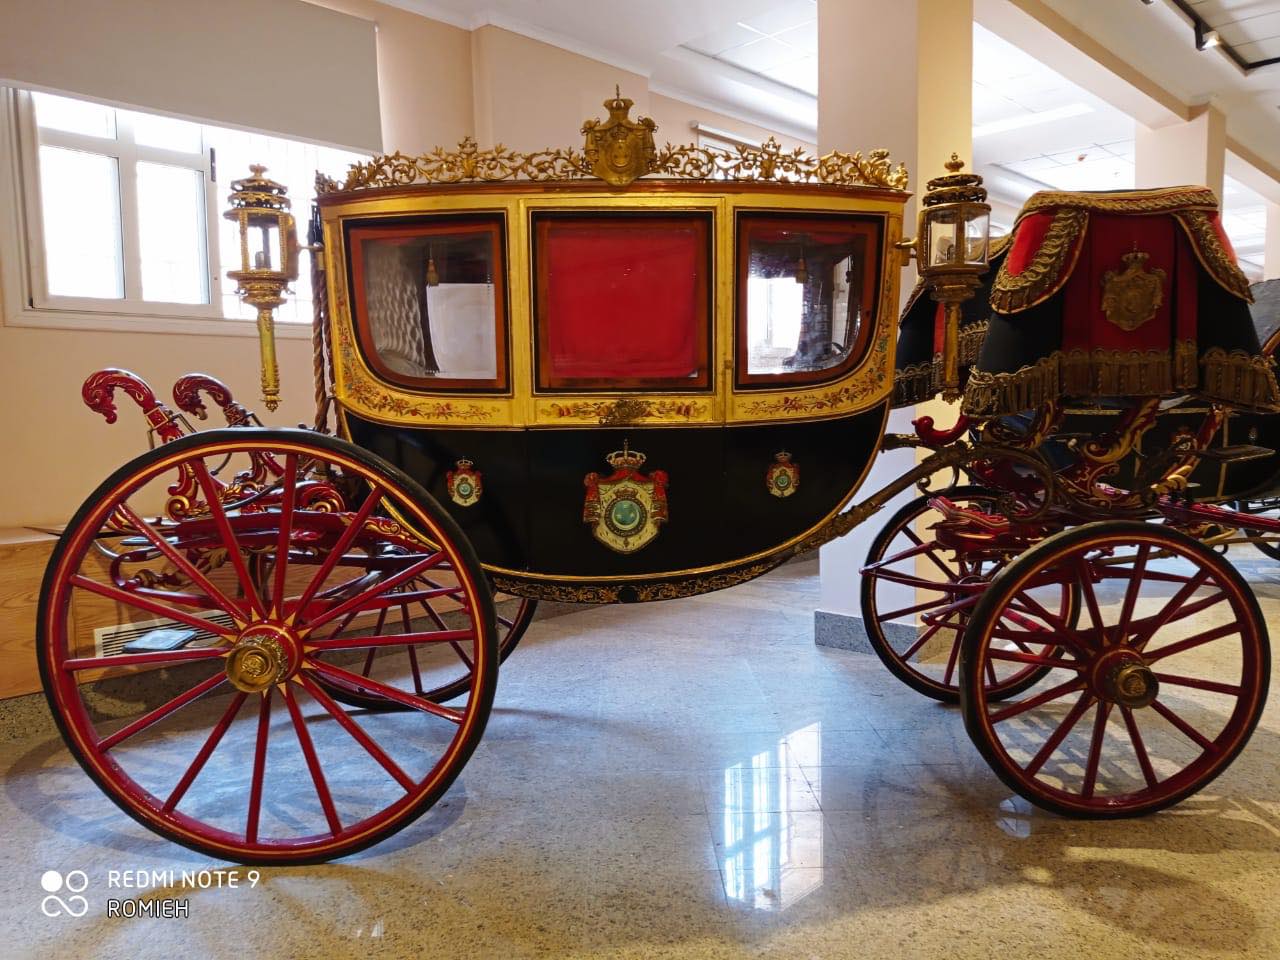 وزير السياحة والآثار يتابع اللمسات النهائية لأعمال ترميم متحف المركبات الملكية